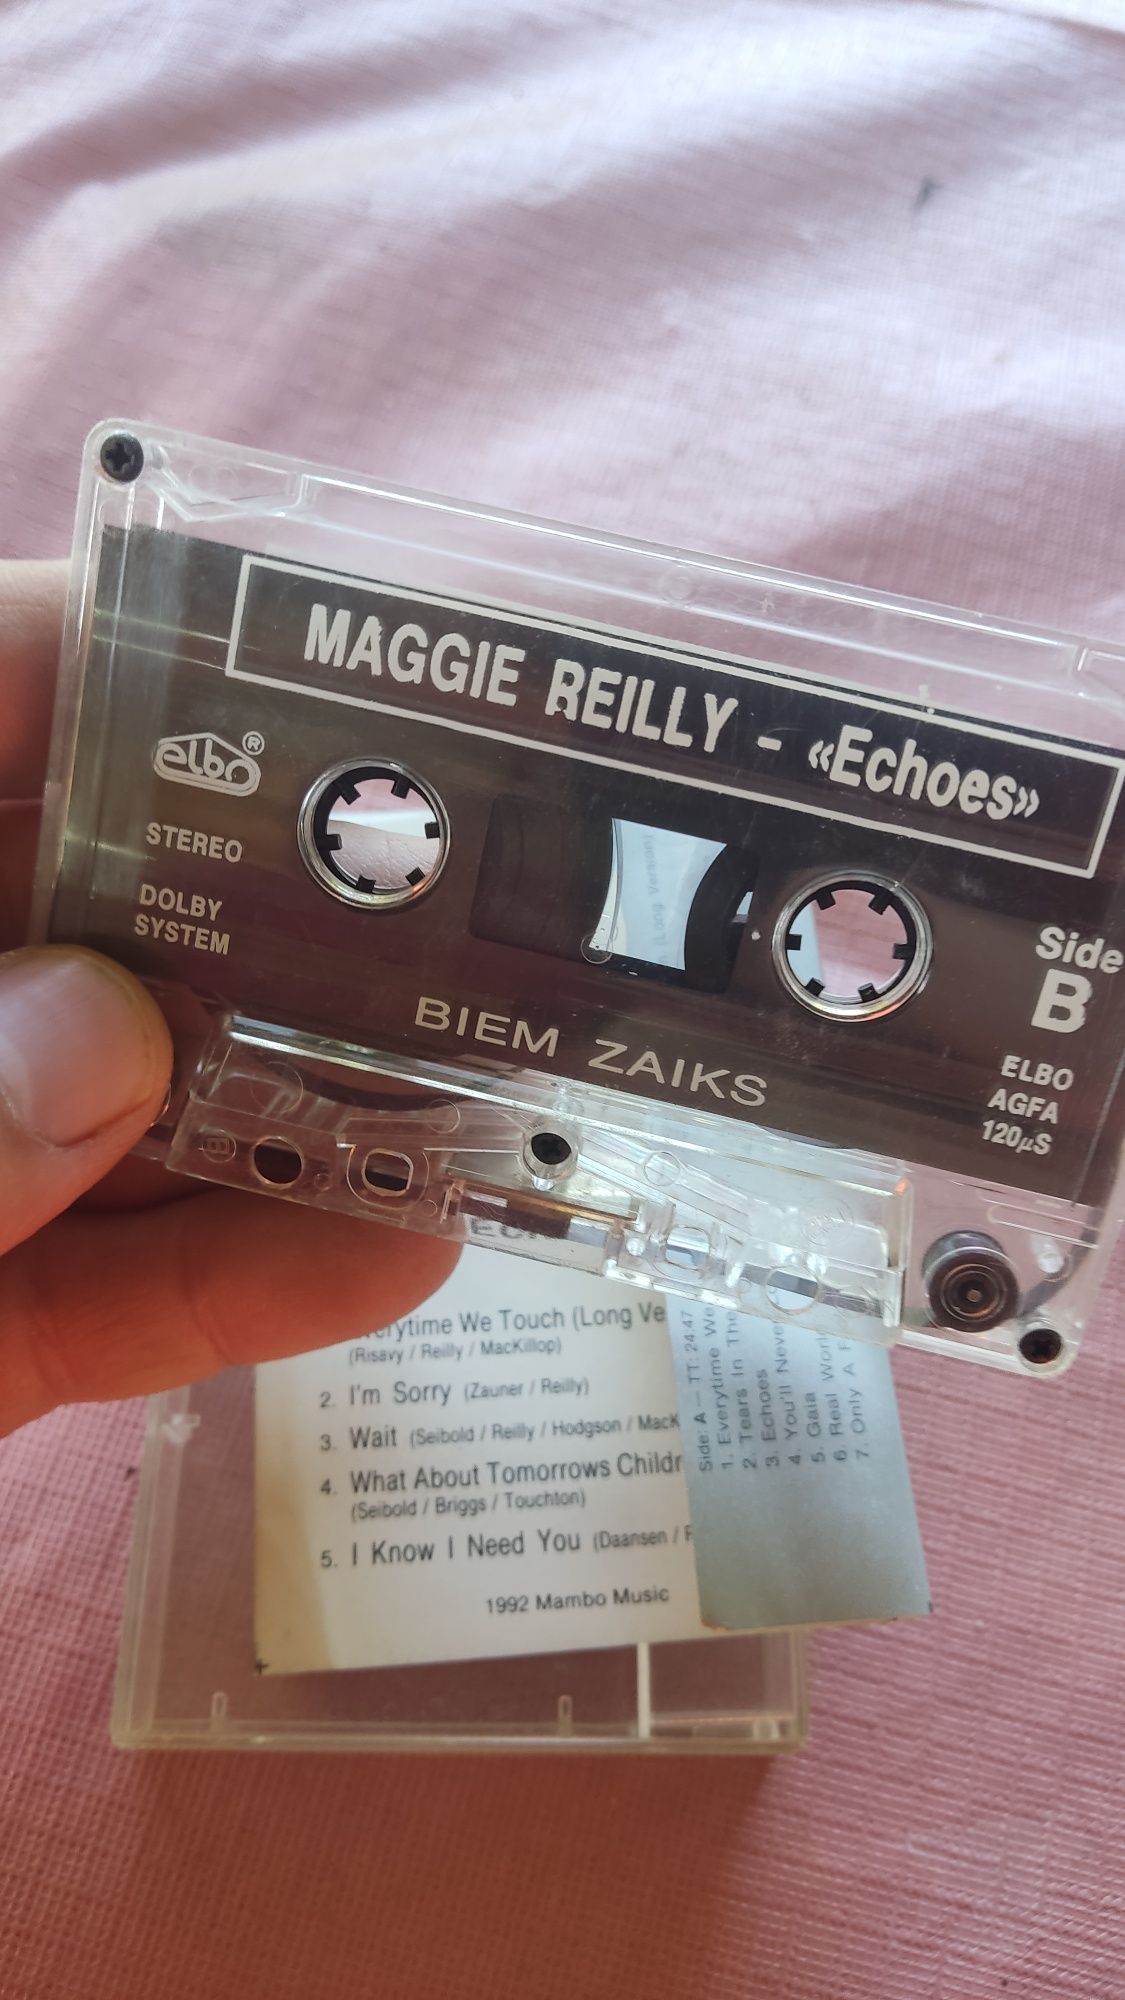 Maggie Reilly Echoes super hit Elbo kaseta